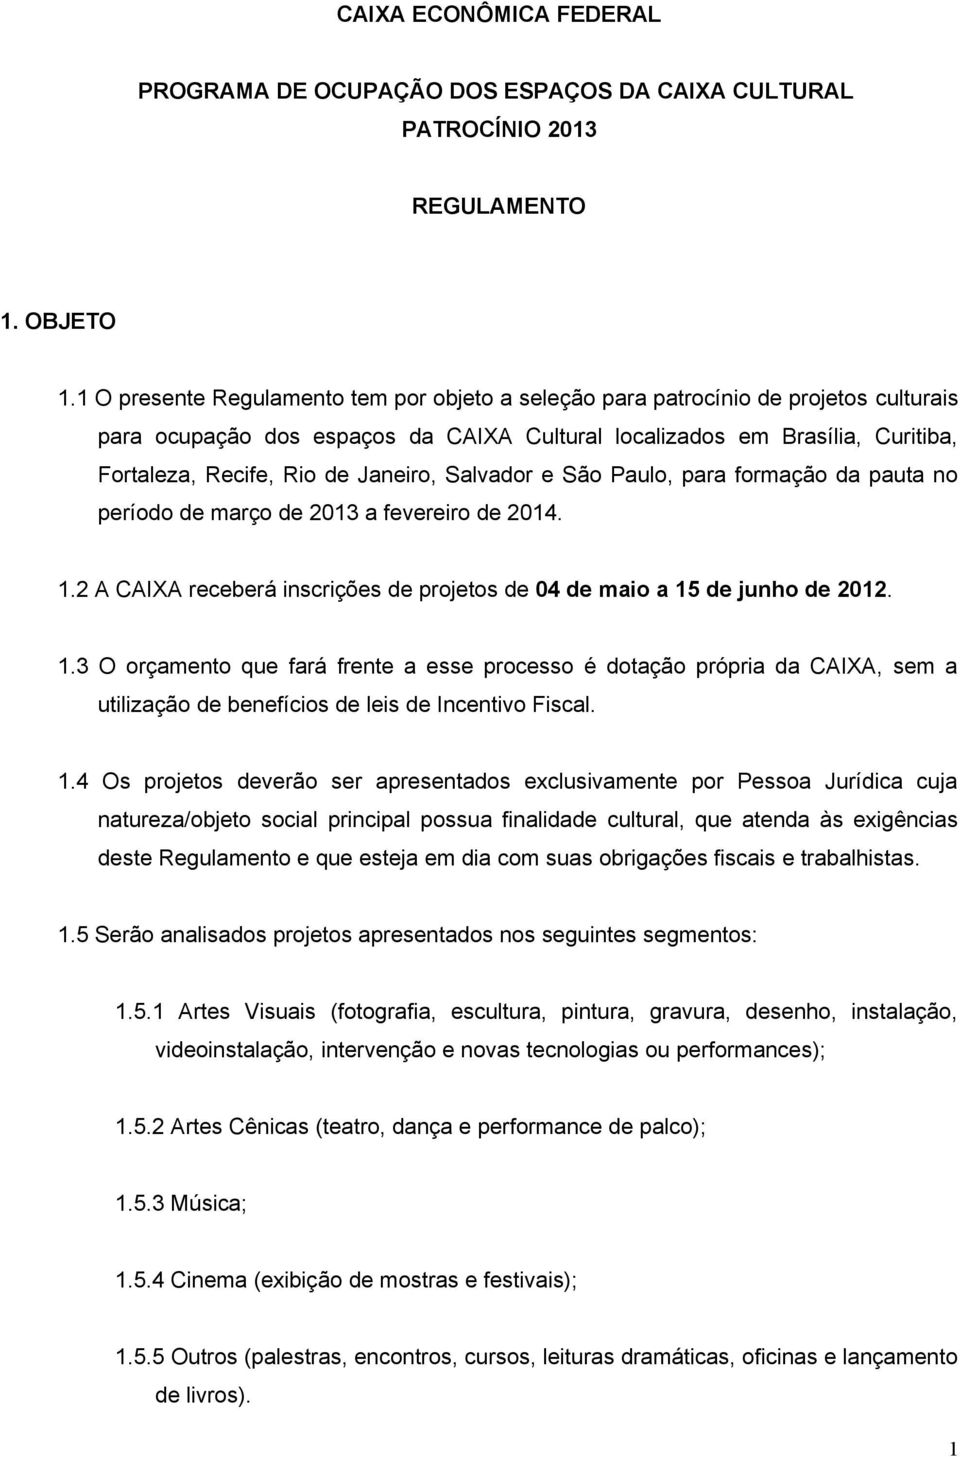 Janeiro, Salvador e São Paulo, para formação da pauta no período de março de 2013 a fevereiro de 2014. 1.